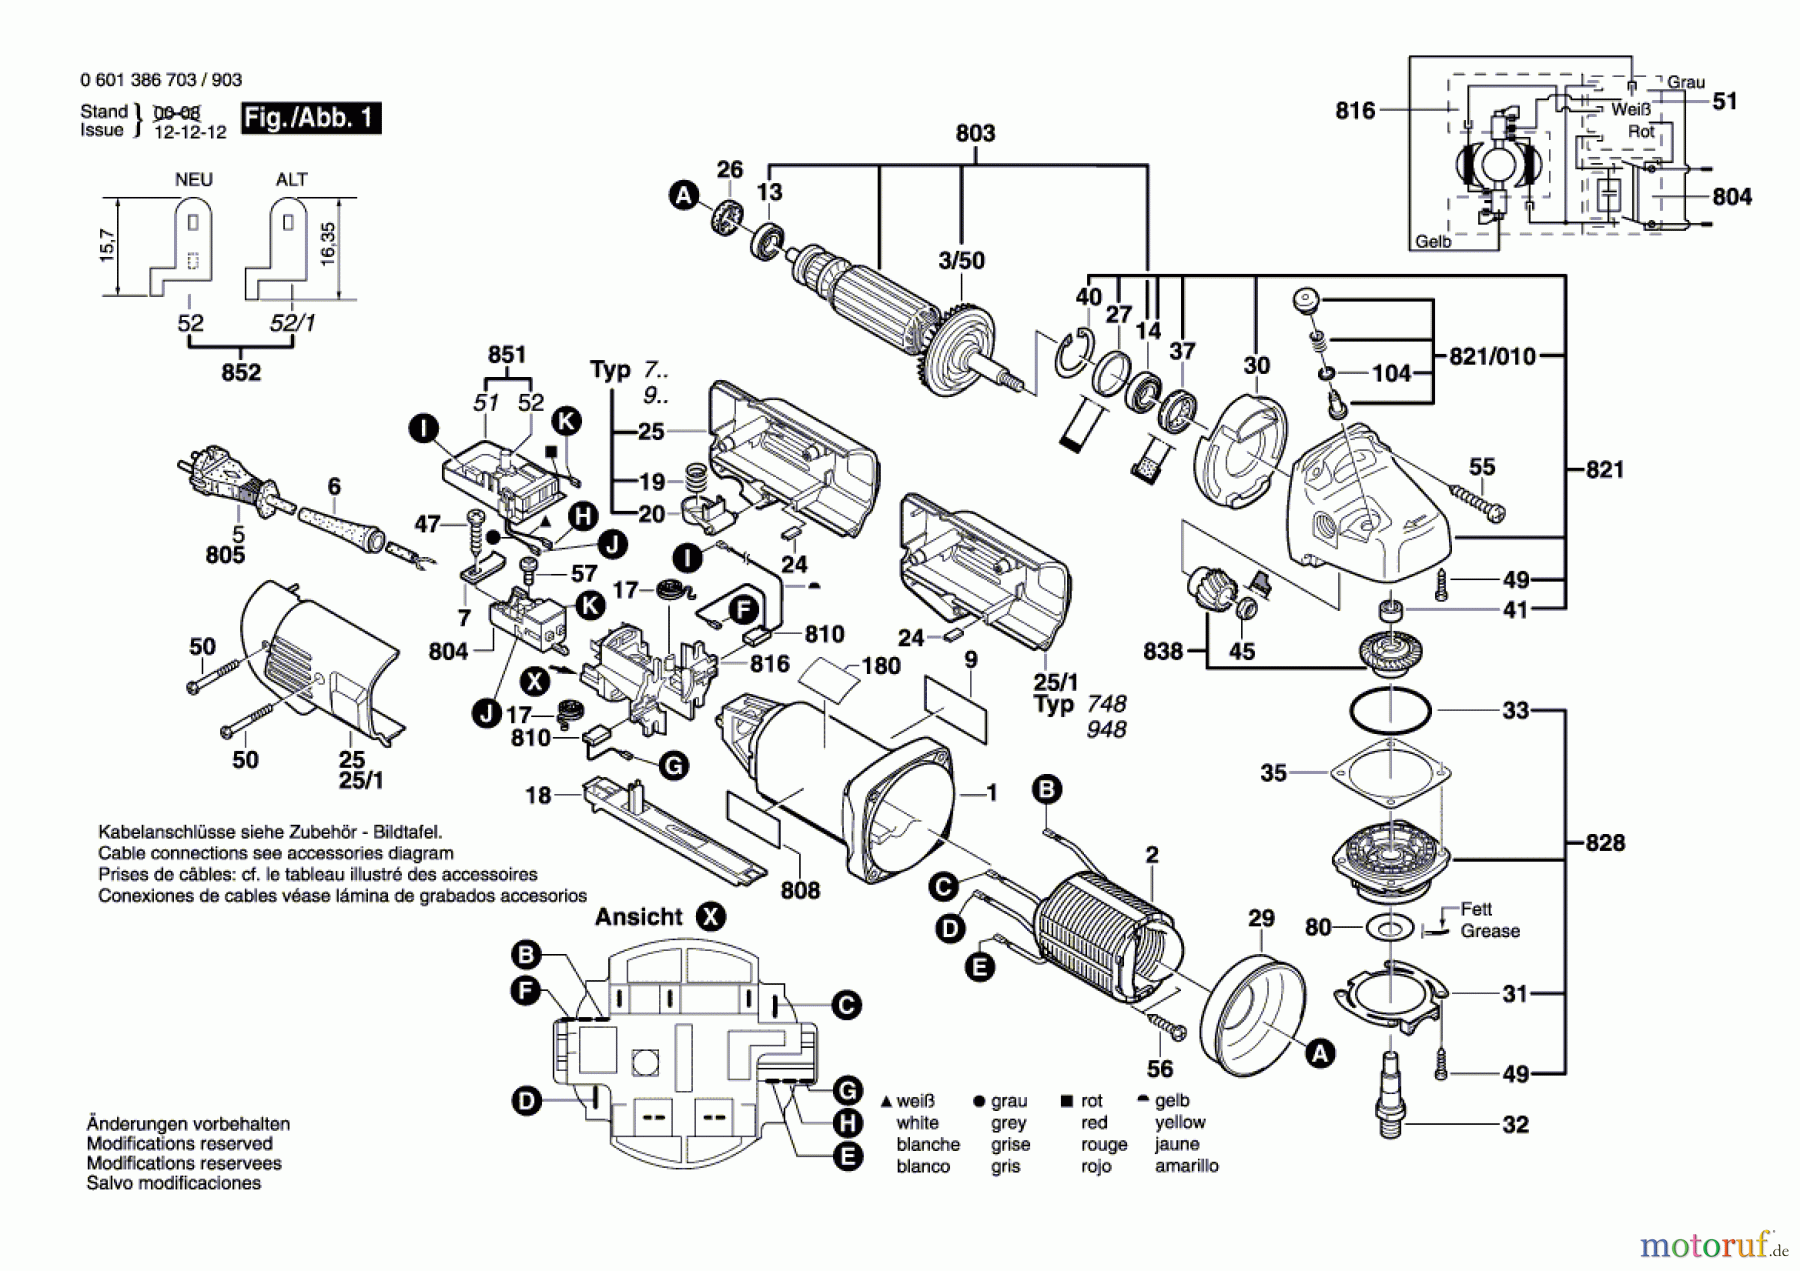  Bosch Werkzeug Winkelschleifer GWS 14-150 C Seite 1